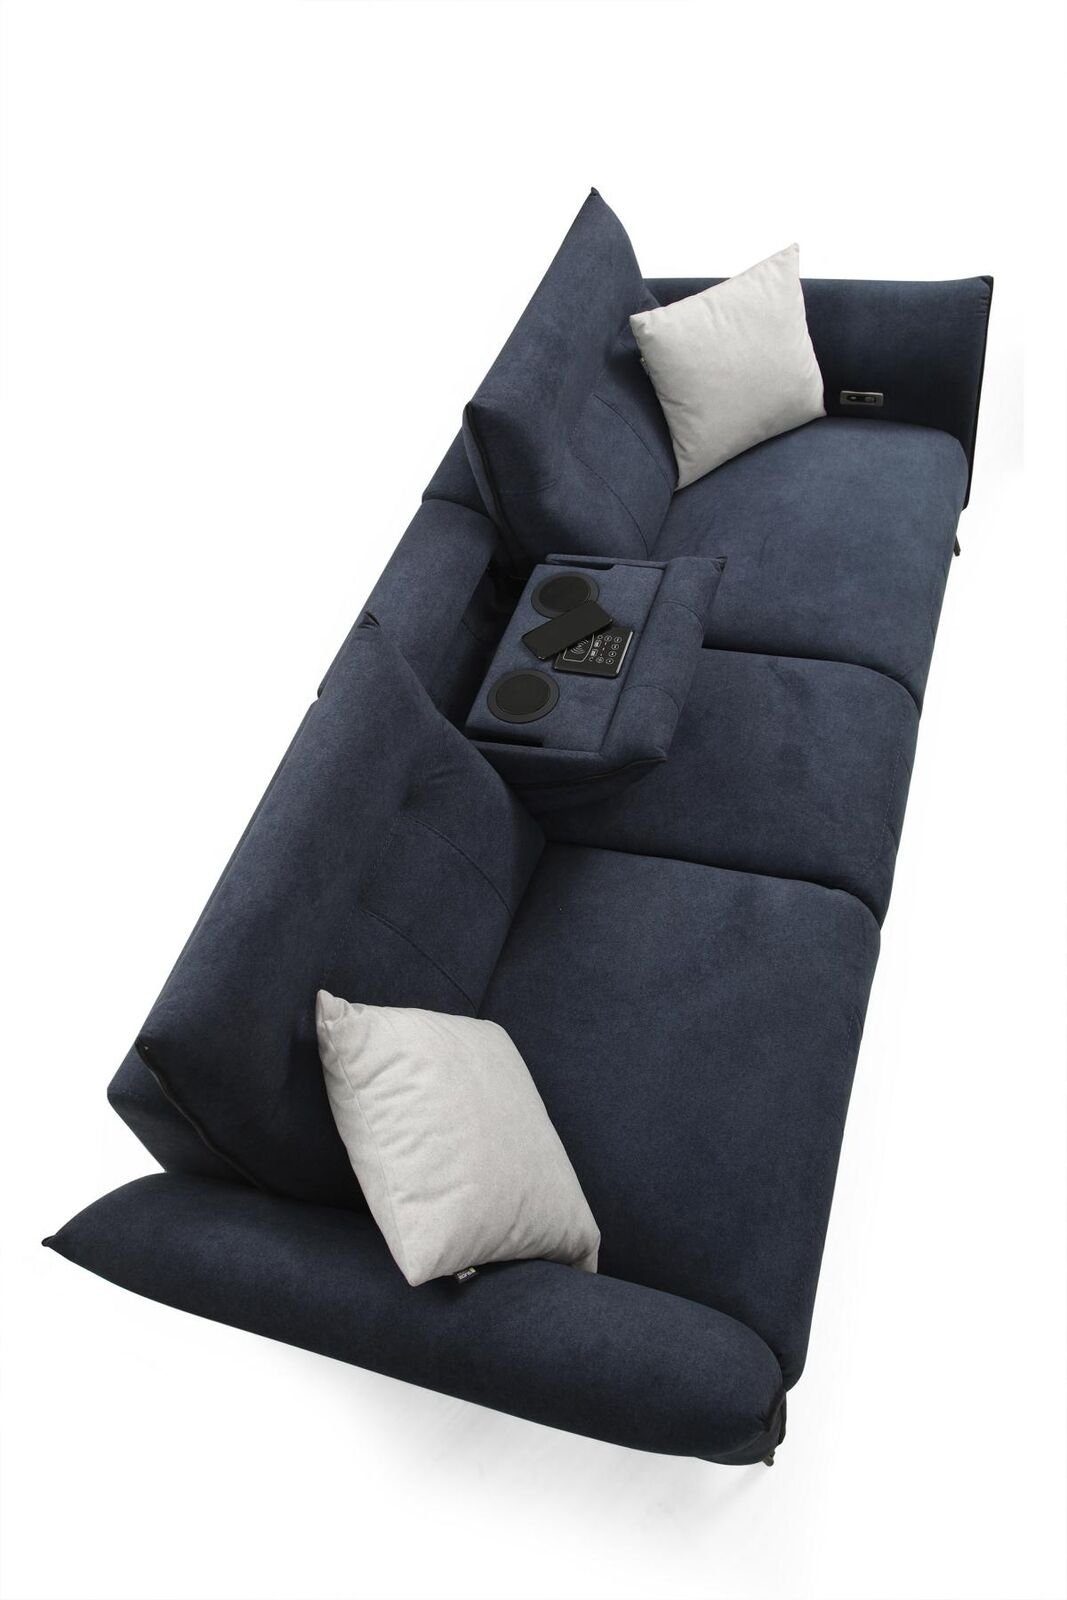 JVmoebel Designer Luxus, Sitzer Couch Made Europa 1 Modern Polstersofa 4-Sitzer in Wohnzimmer Sofa Teile,